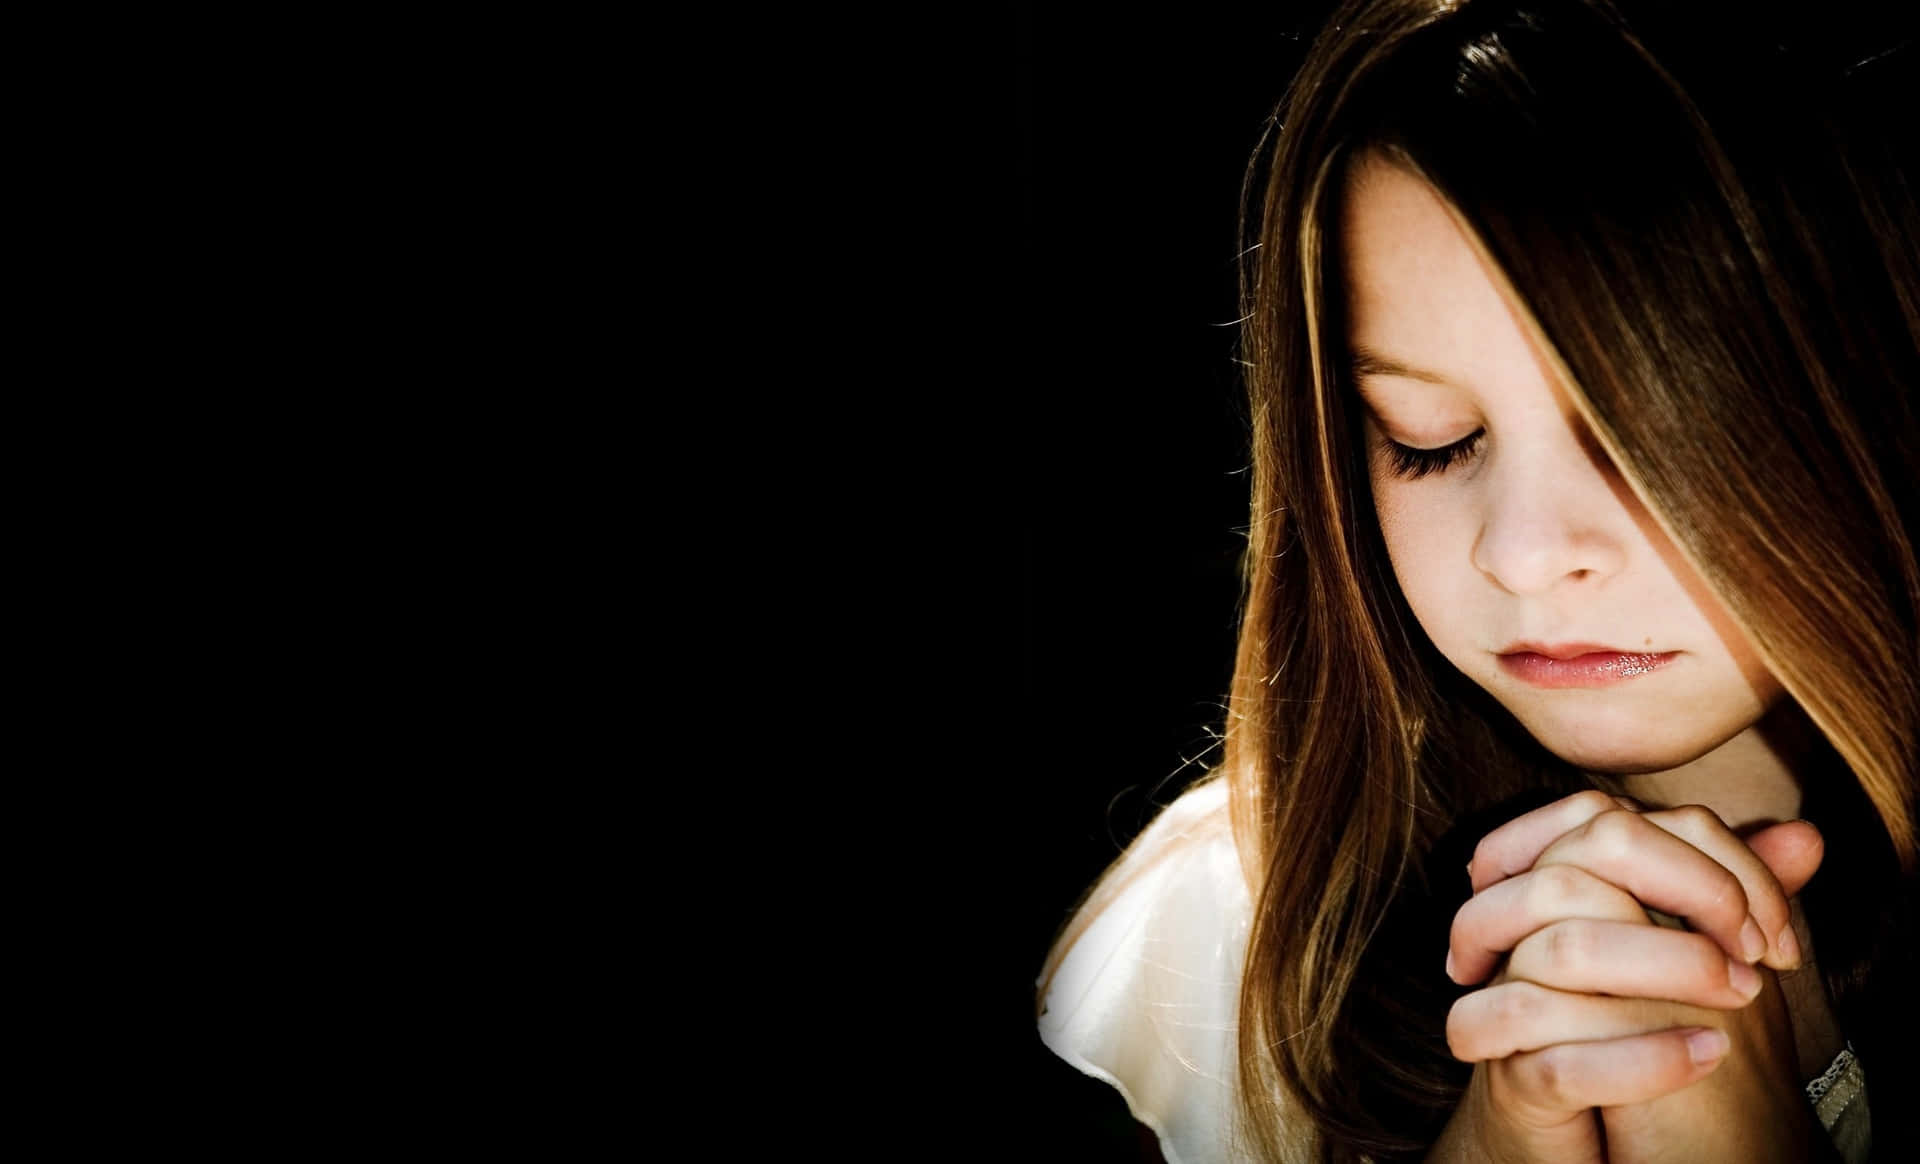 Momentospirituale Di Una Persona Che Prega In Un'atmosfera Fioca